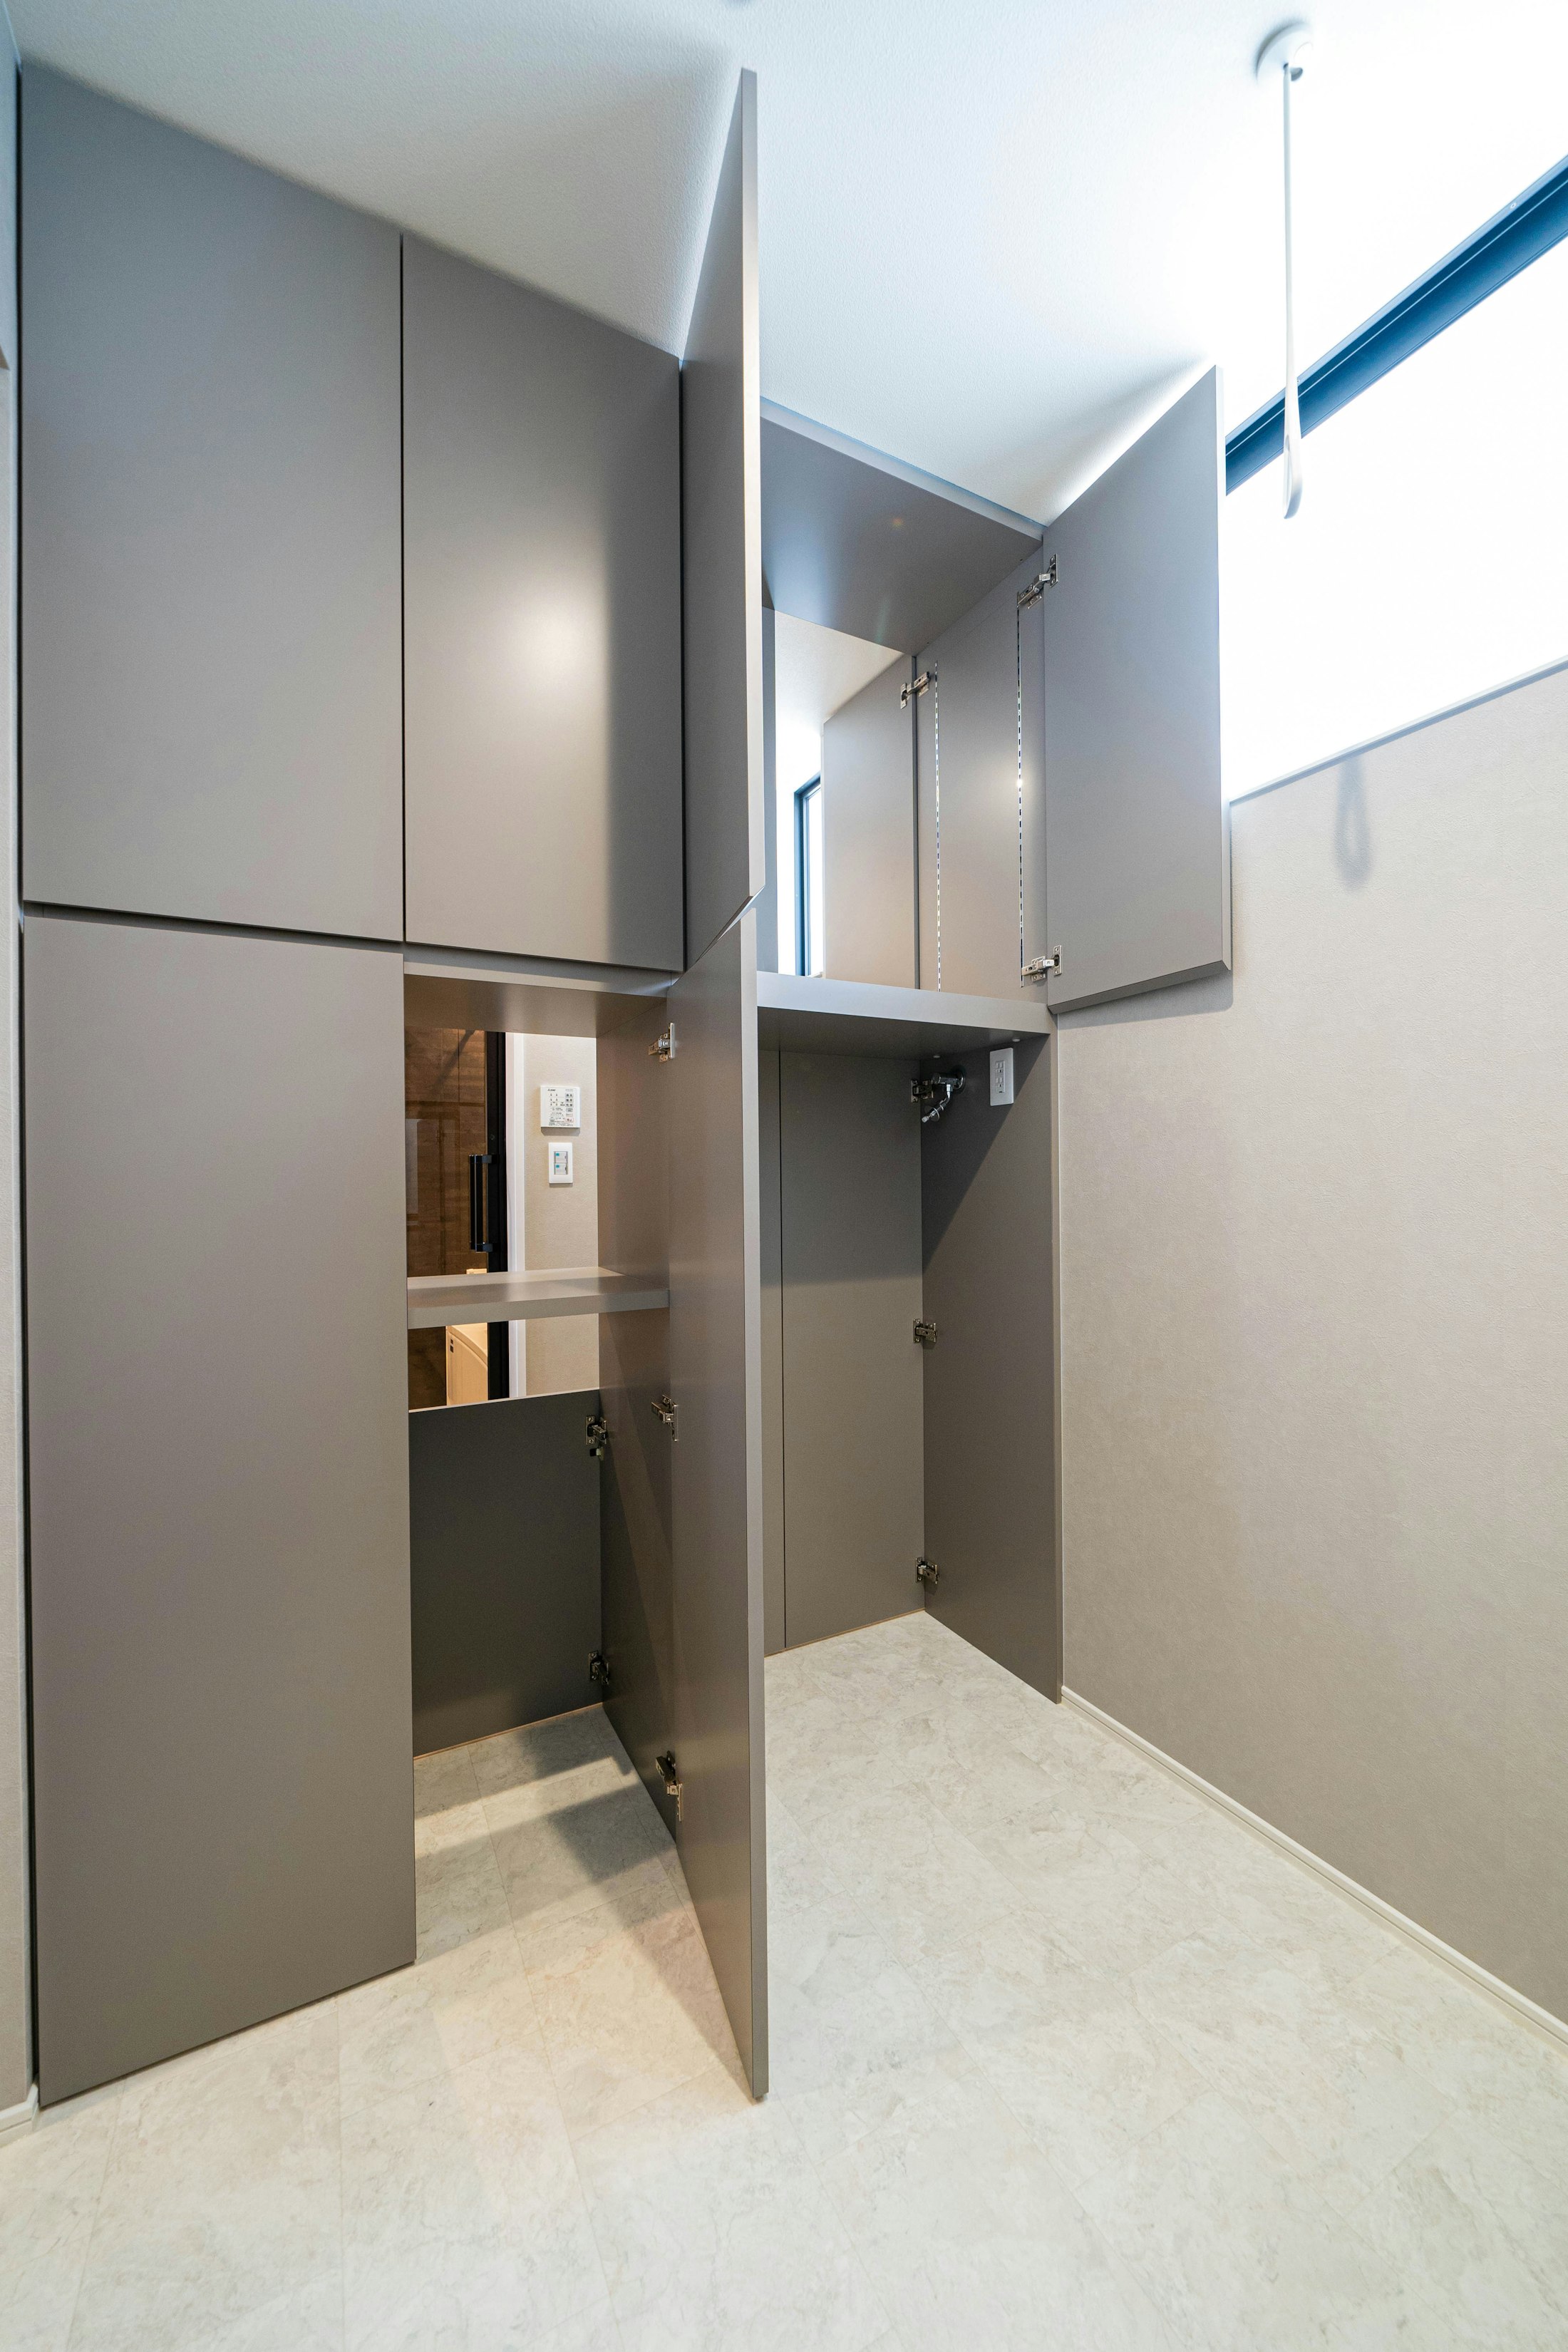 脱衣室と洗濯機のあるサンルームの間には、両側から出し入れできる収納を設置